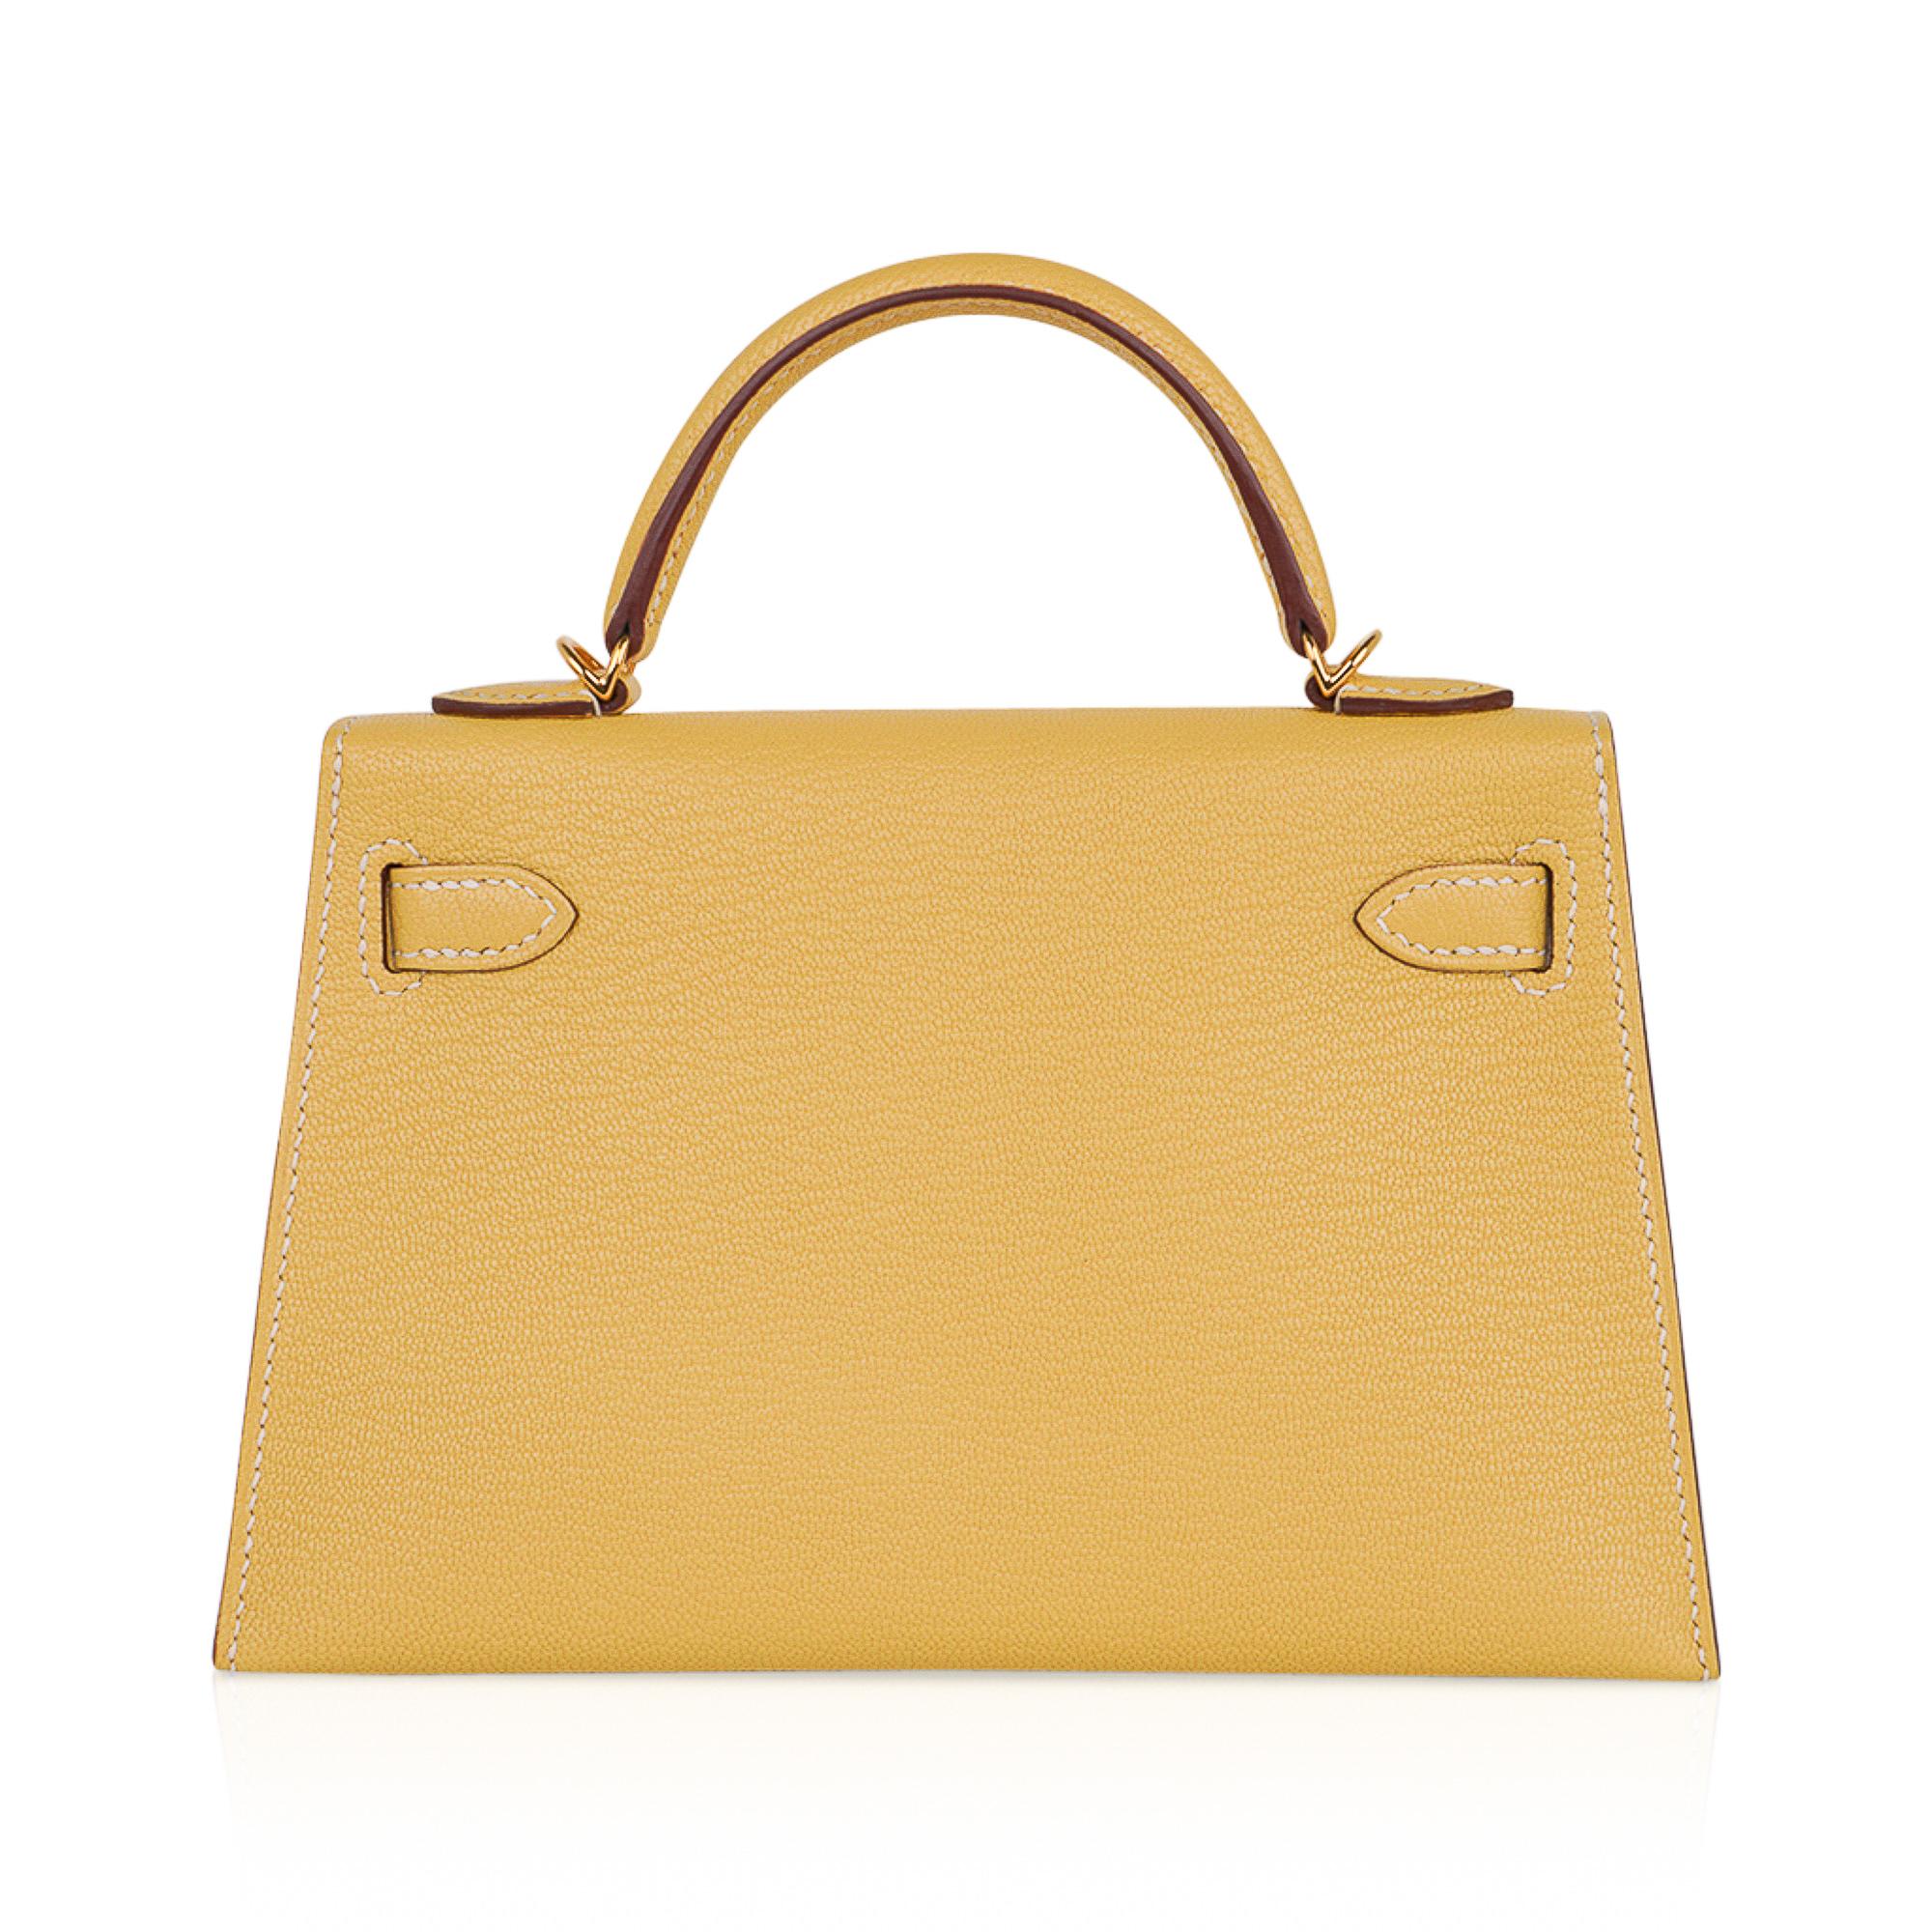 Women's Hermes Kelly Sellier Mini 20 Jaune Foin Bag Chevre Leather Gold Hardware New